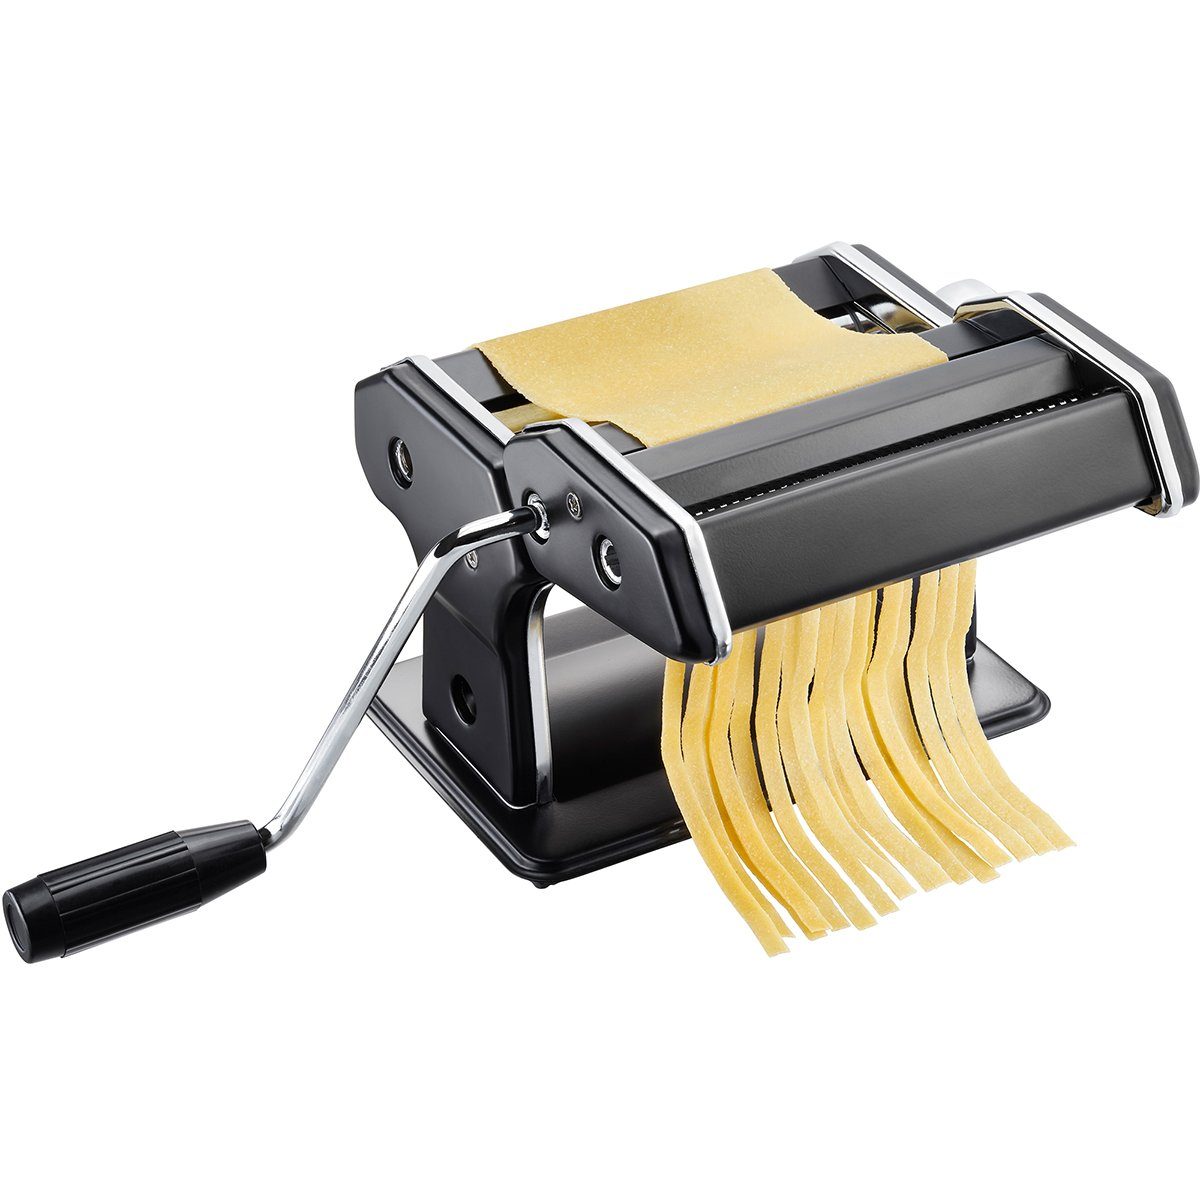 GEFU Nudelmaschine Italienische Pastamaschine Pasta PERFETTA schwarz matt,  für Lasagne, Tagliolini und Tagliatelle